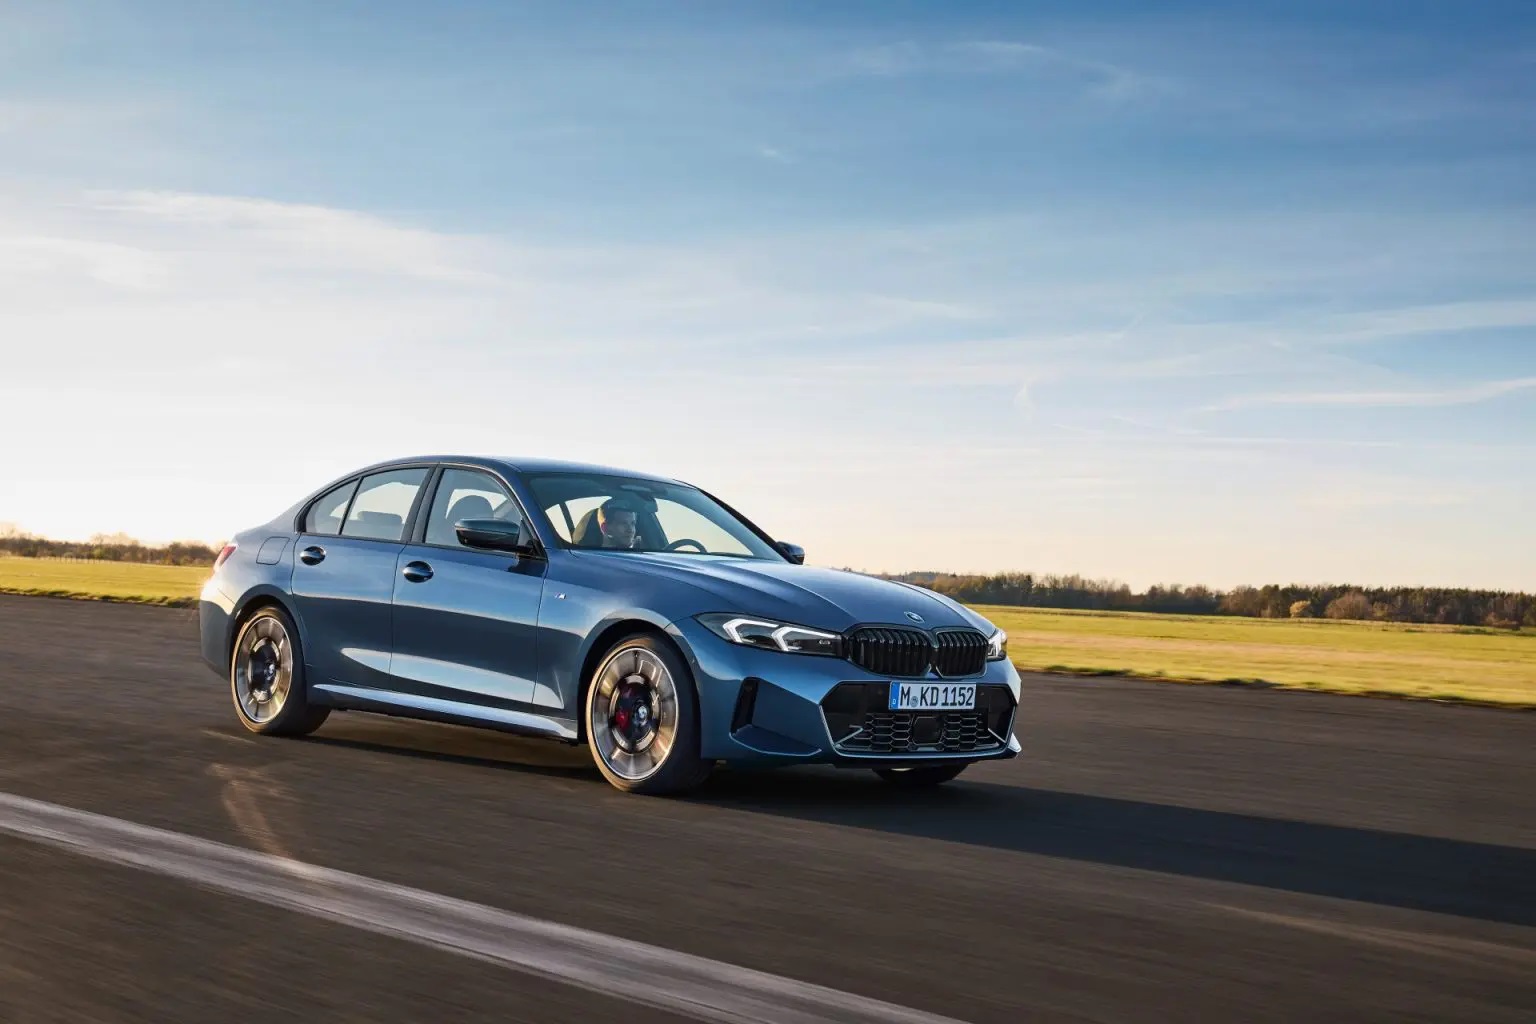 El BMW Serie 3 recibe otra actualización antes de cambiar de generación